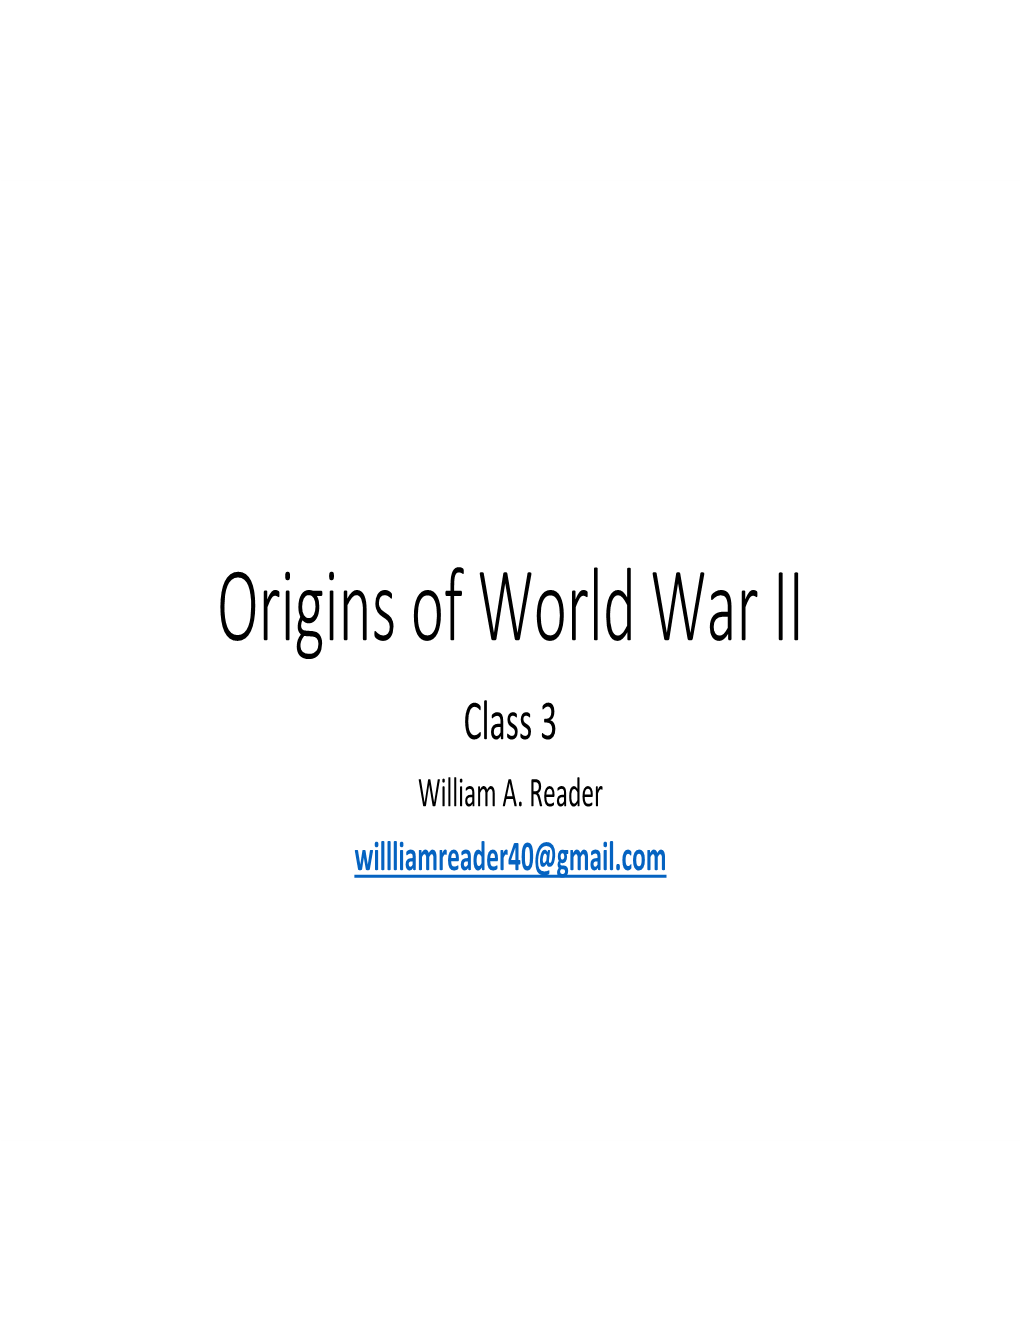 Origins of World War II Class 3 William A